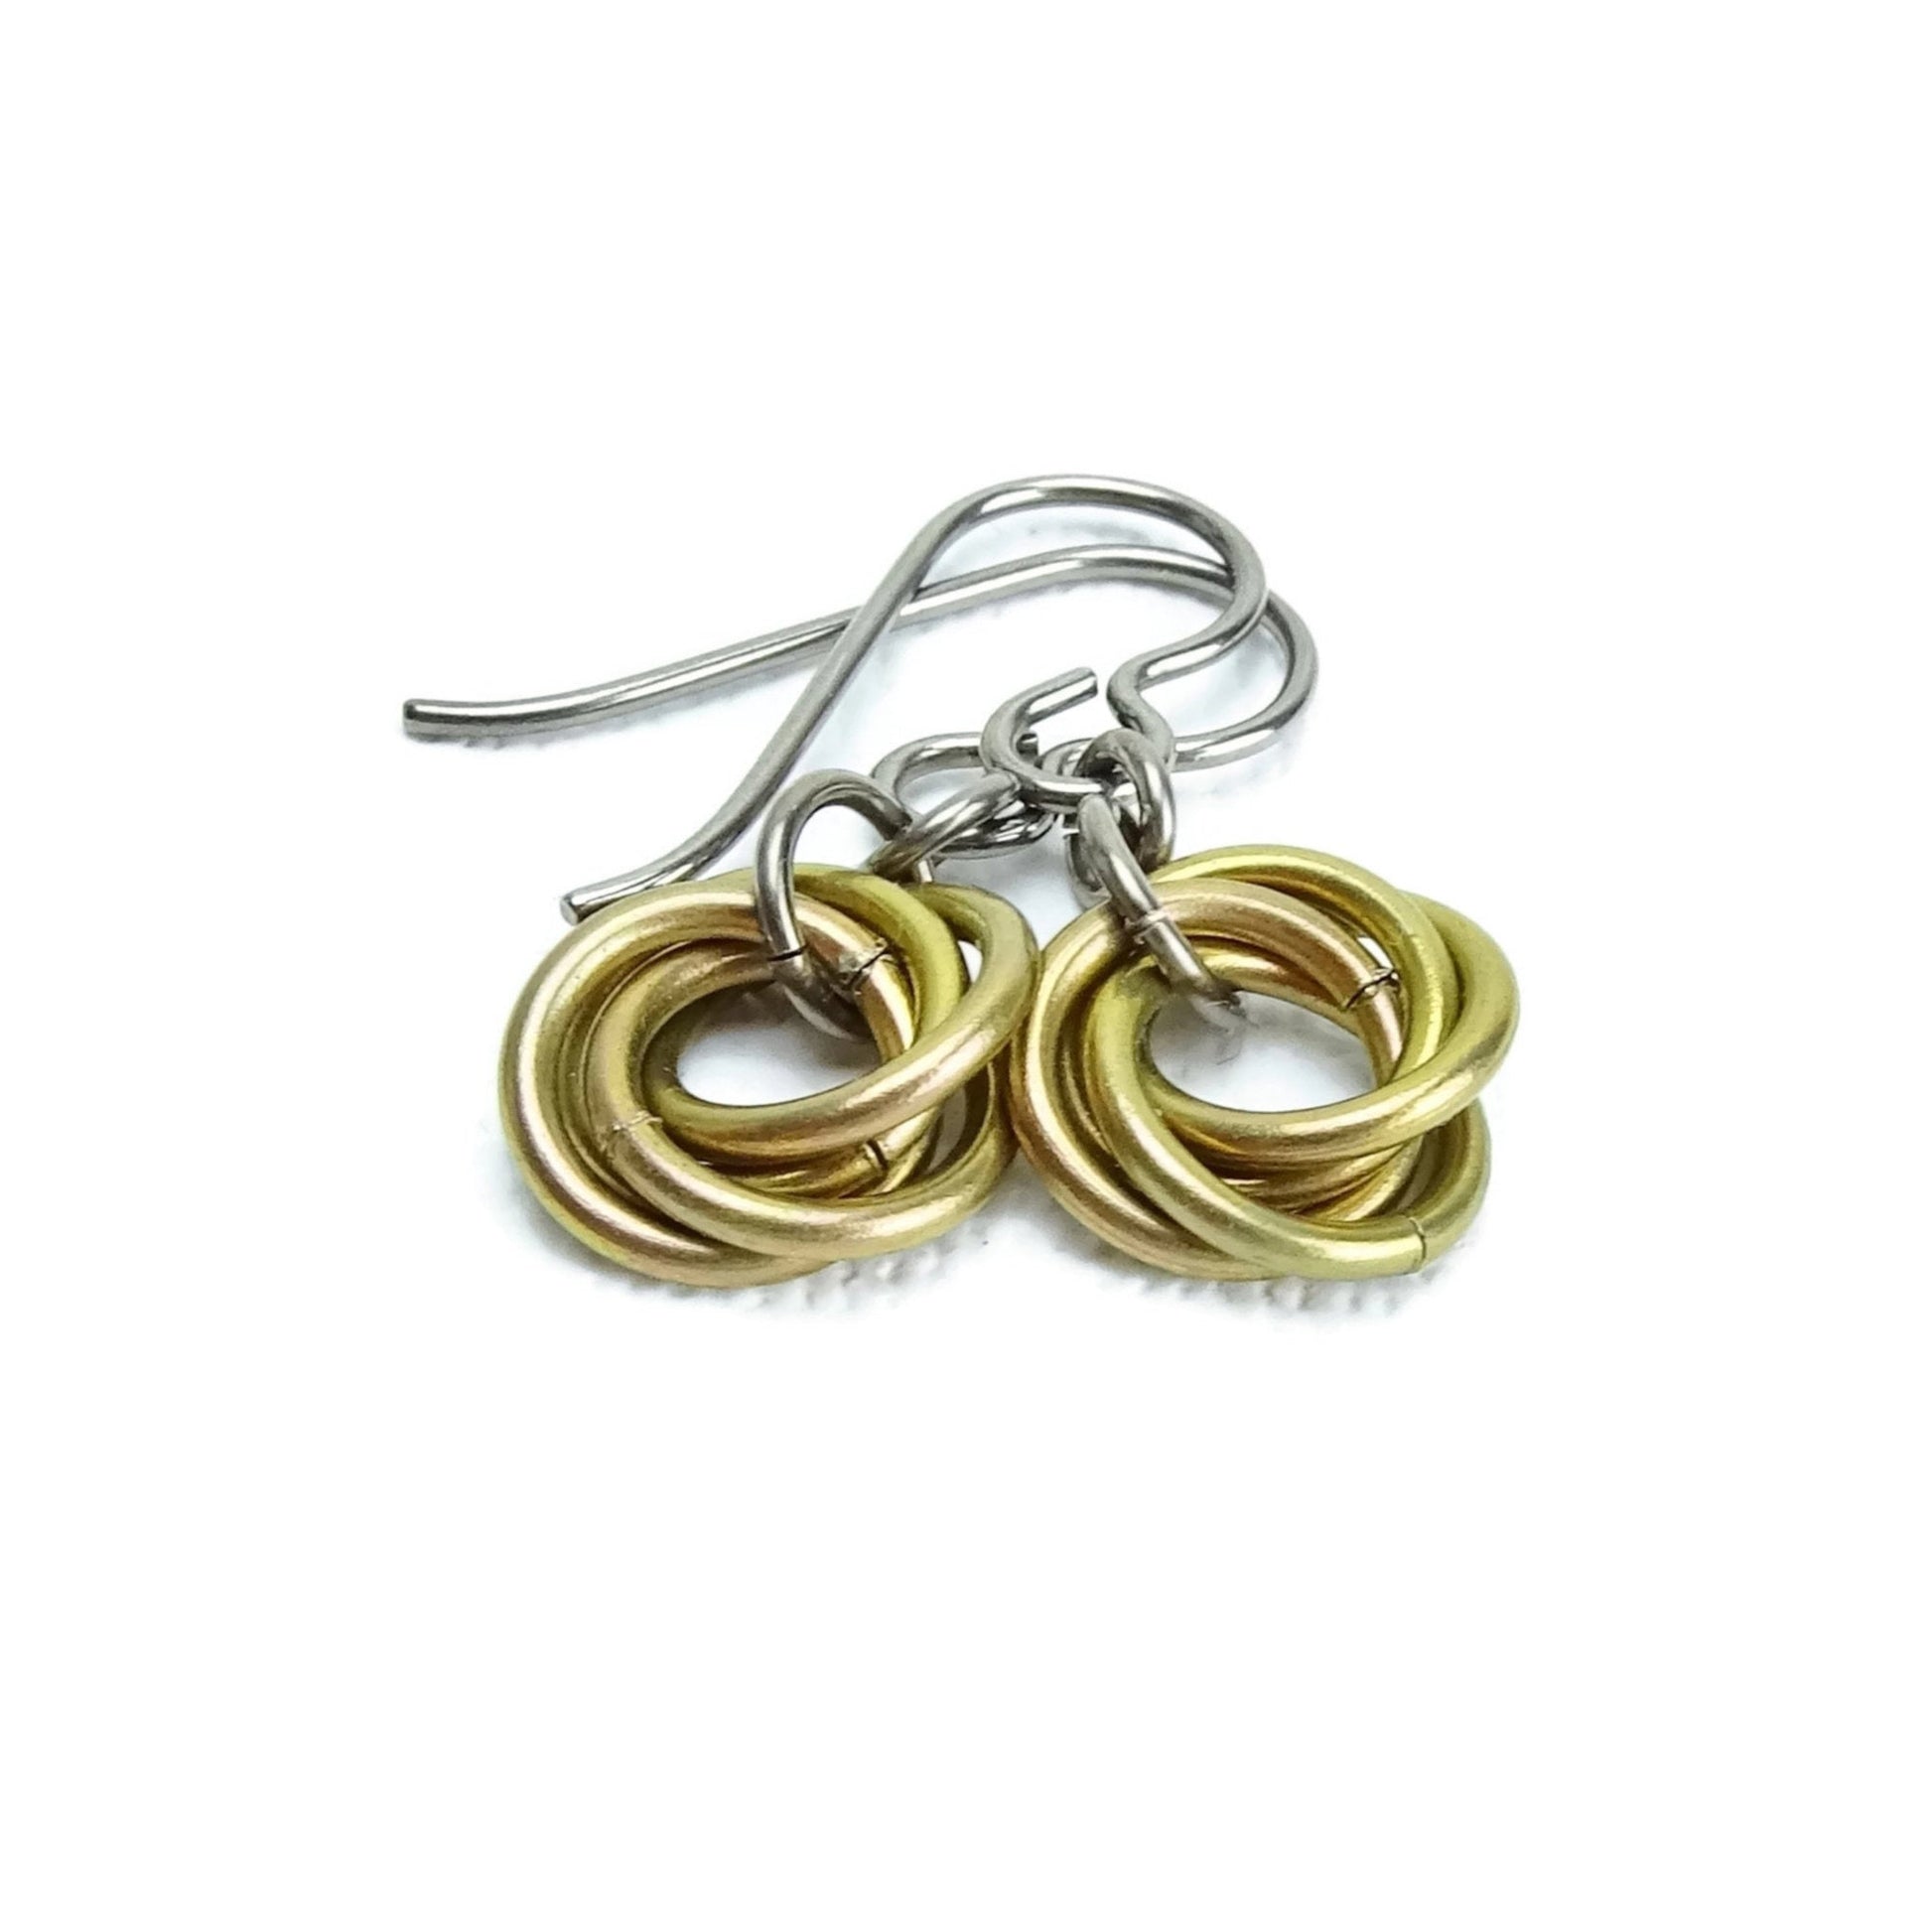 Rose Gold Niobium Earrings, Nickel Free Hypoallergenic Earrings for Sensitive Ears, Chainmail Infinity Eternity Mobius Titanium Earrings